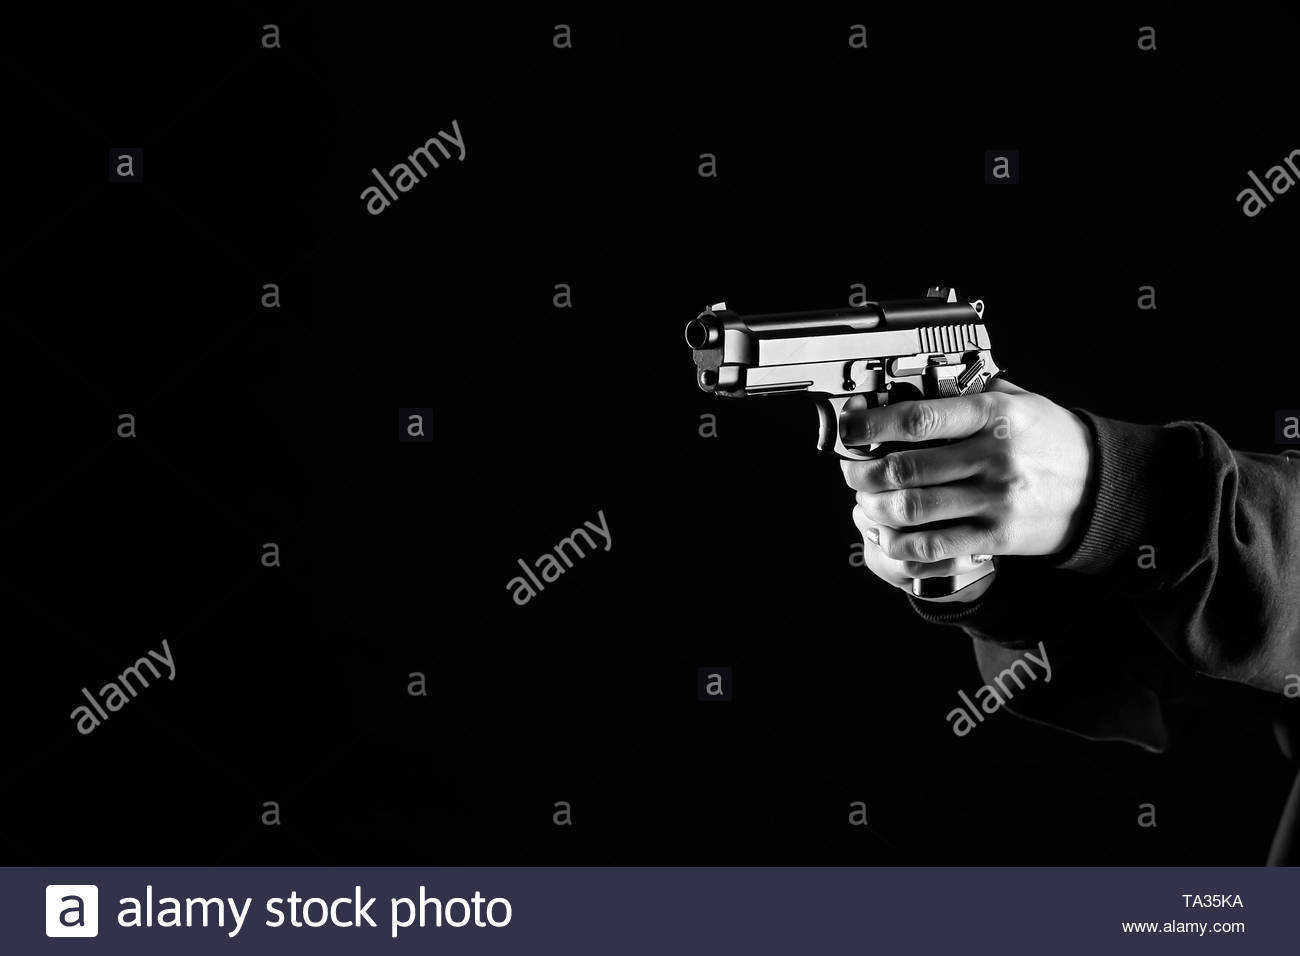 Bandit With Gun On Dark Background Stock Photo